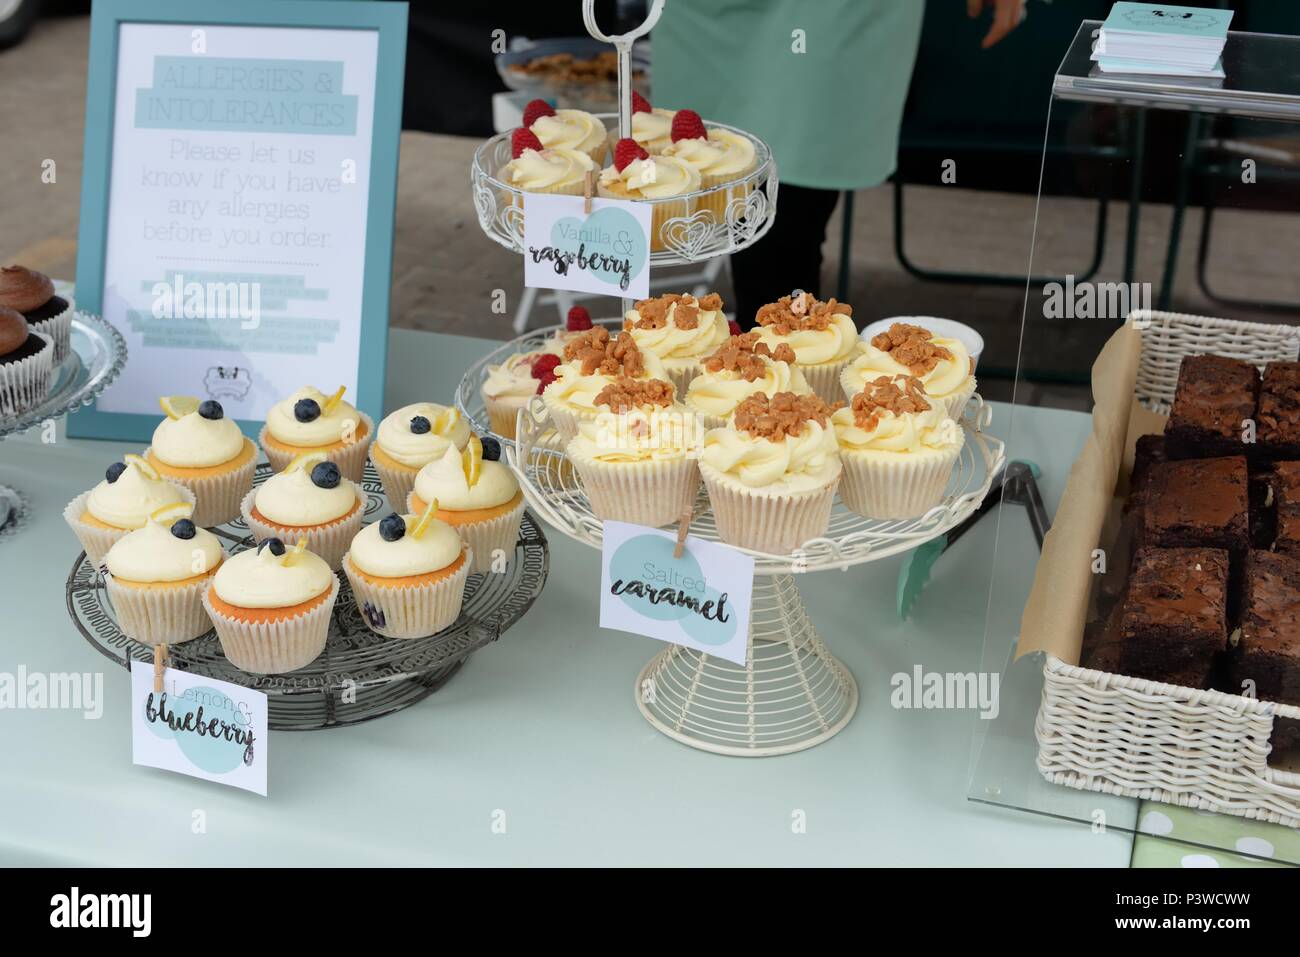 Kuchen steht an einem lokalen Essen Messe in Portree, Skye, Schottland, mit verschiedenen frischen Muffins und einen Hinweis Warnung vor möglichen Nussallergie Inhalt. Stockfoto